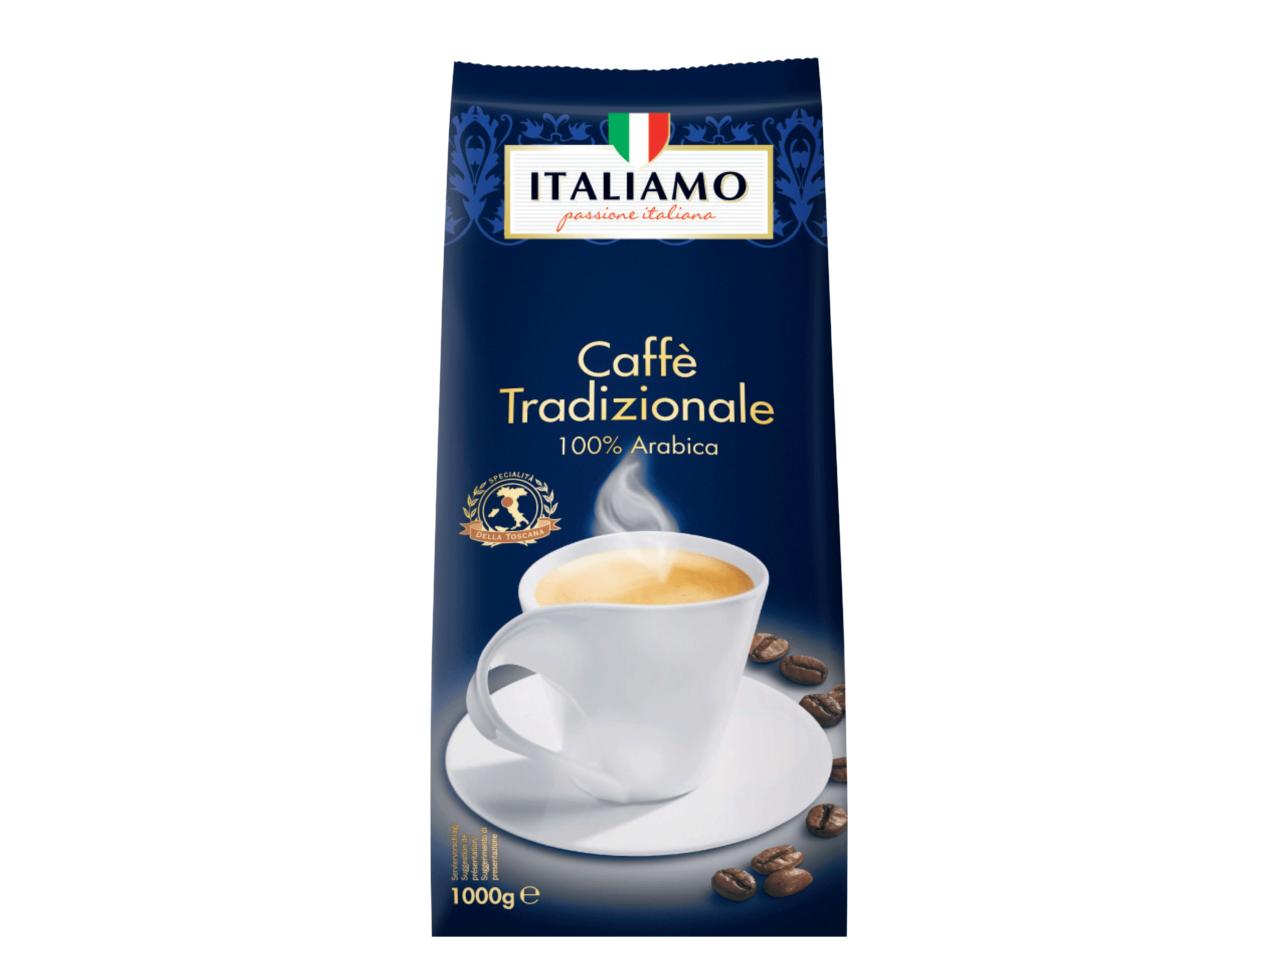 ITALIAMO Caffè Tradizionale 100% Arabica